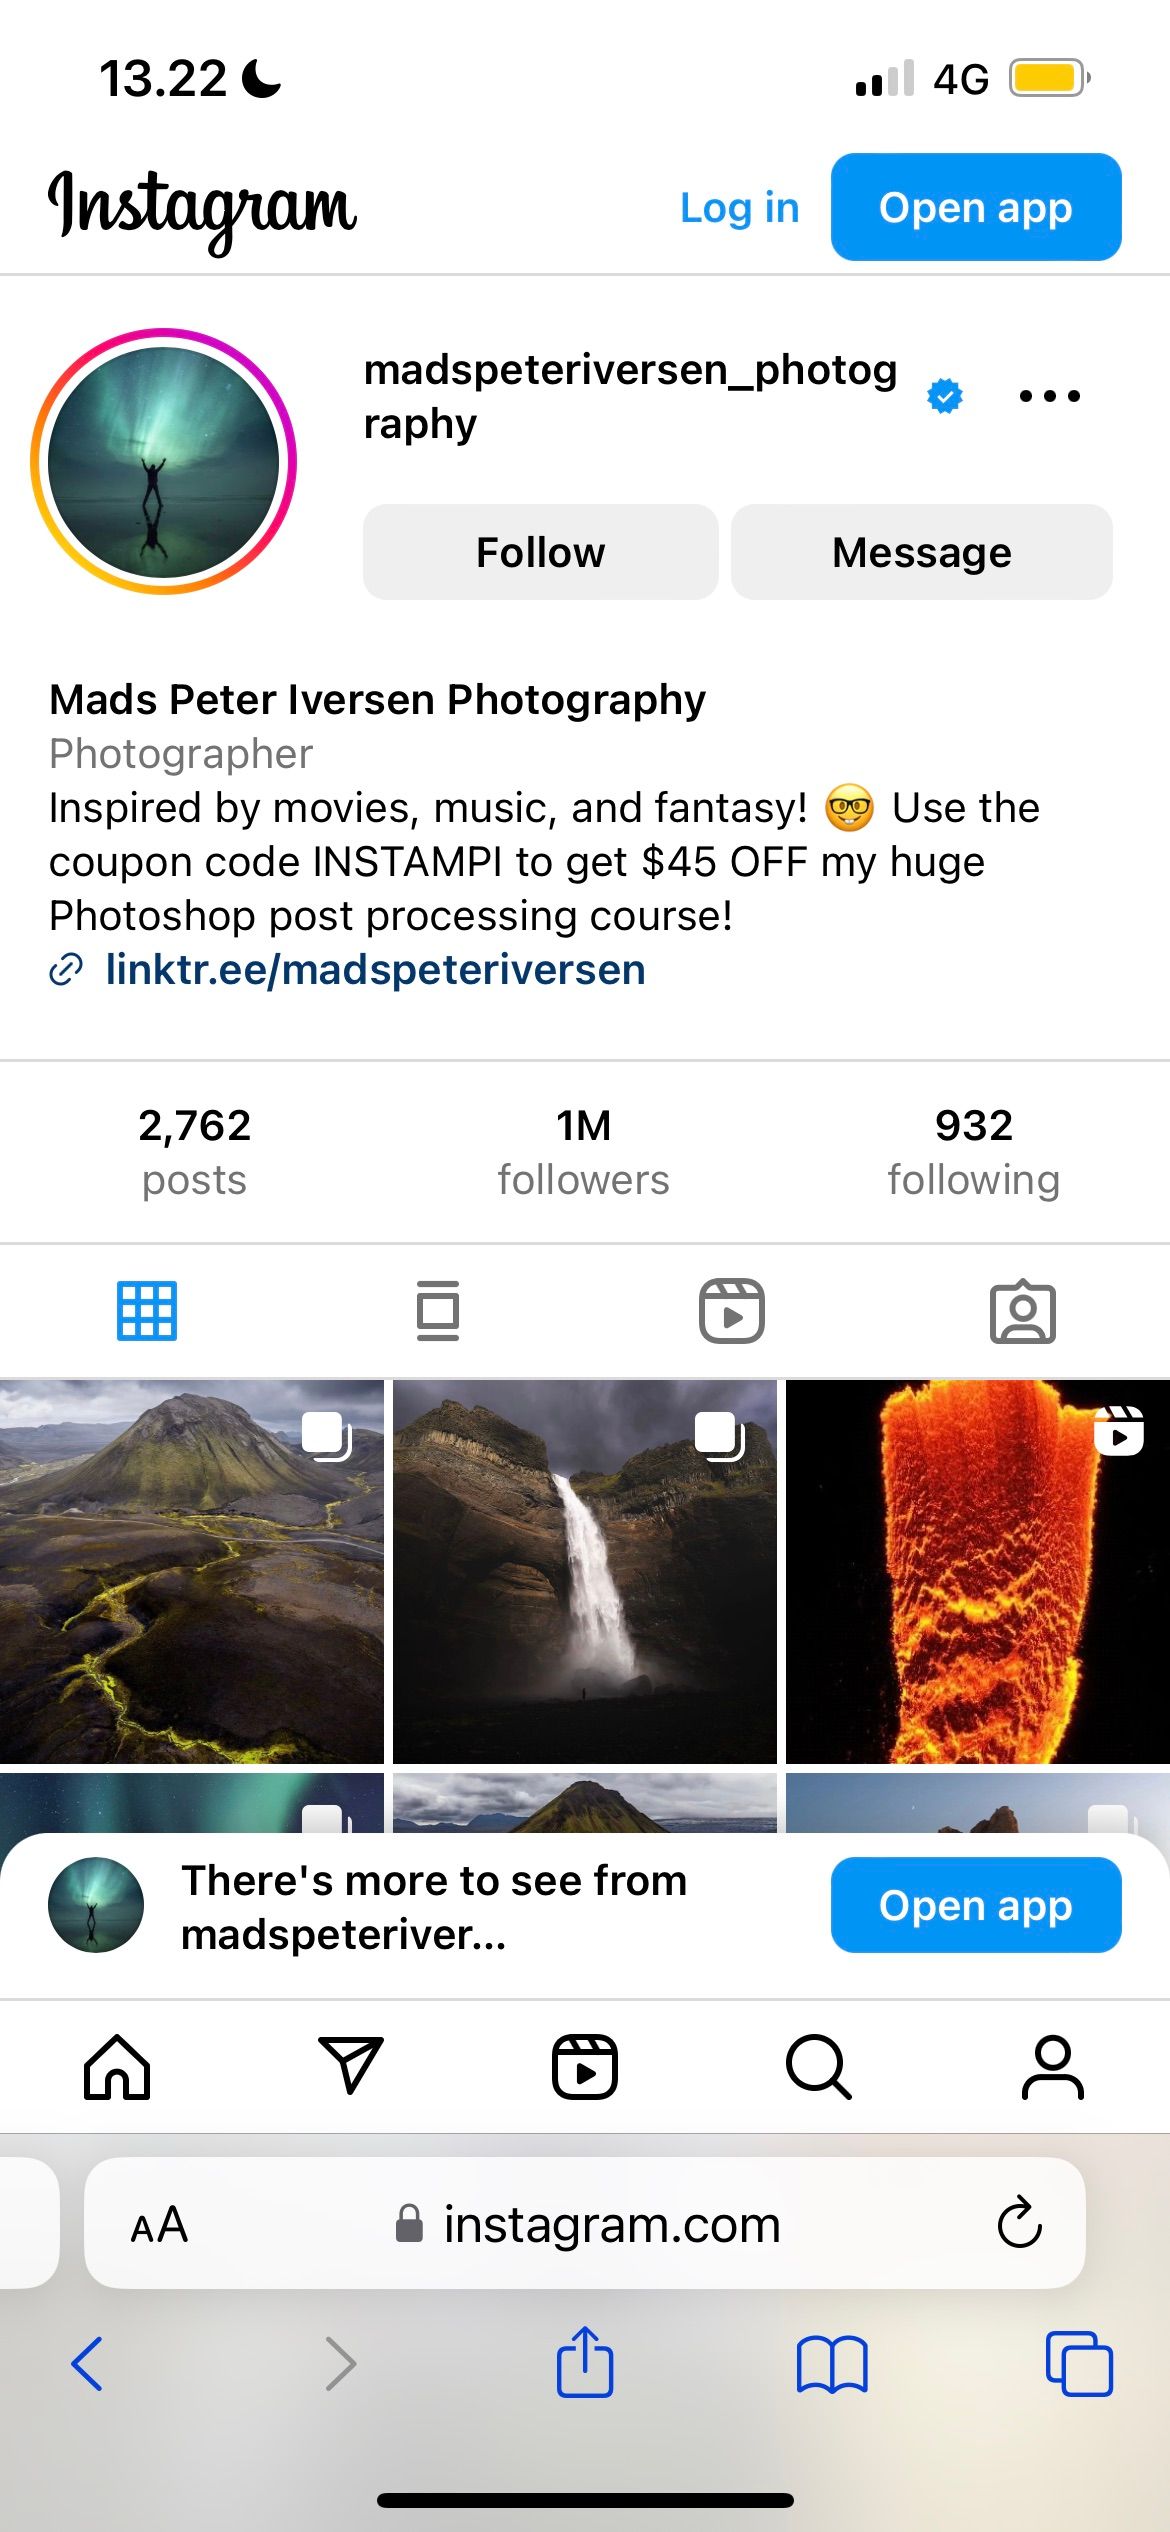 Página do Instagram de fotografia de Mads Peter Iversen